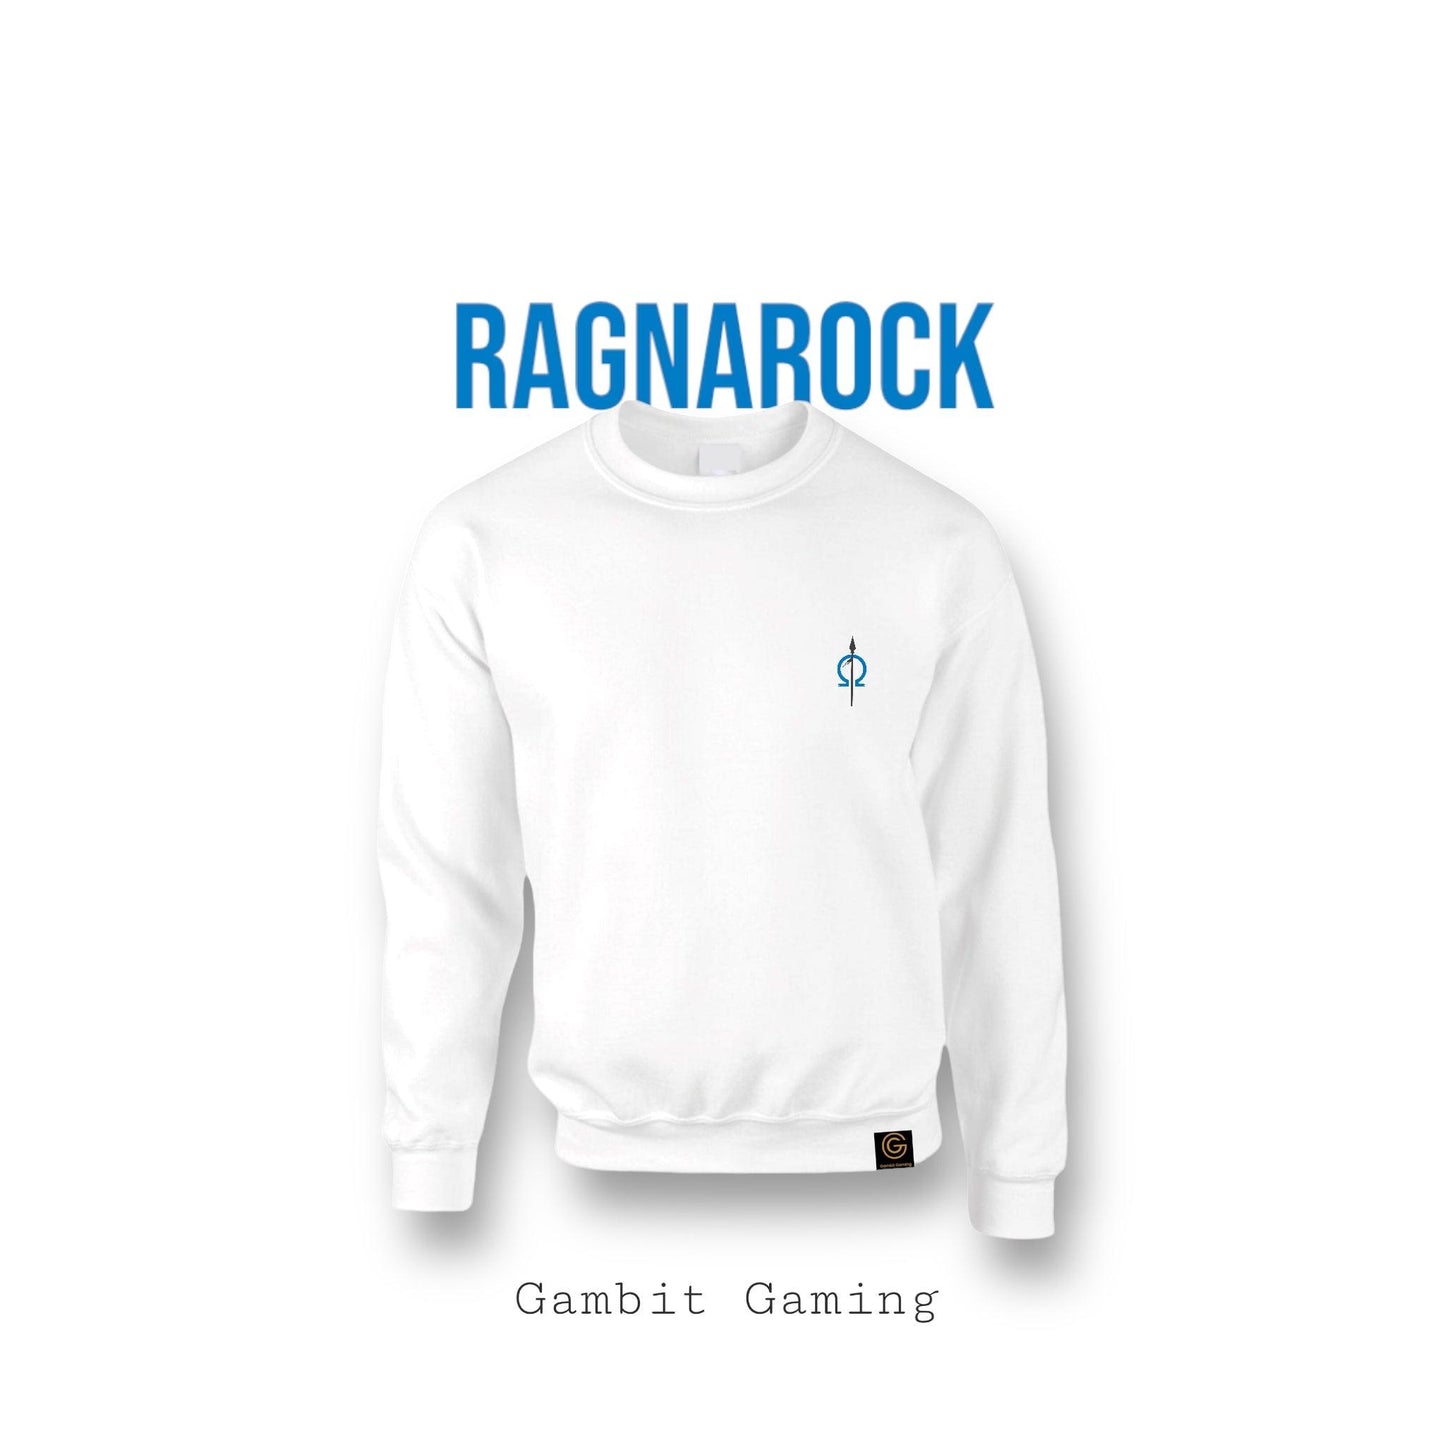 Ragnarock Sweater - Gambit Gaming